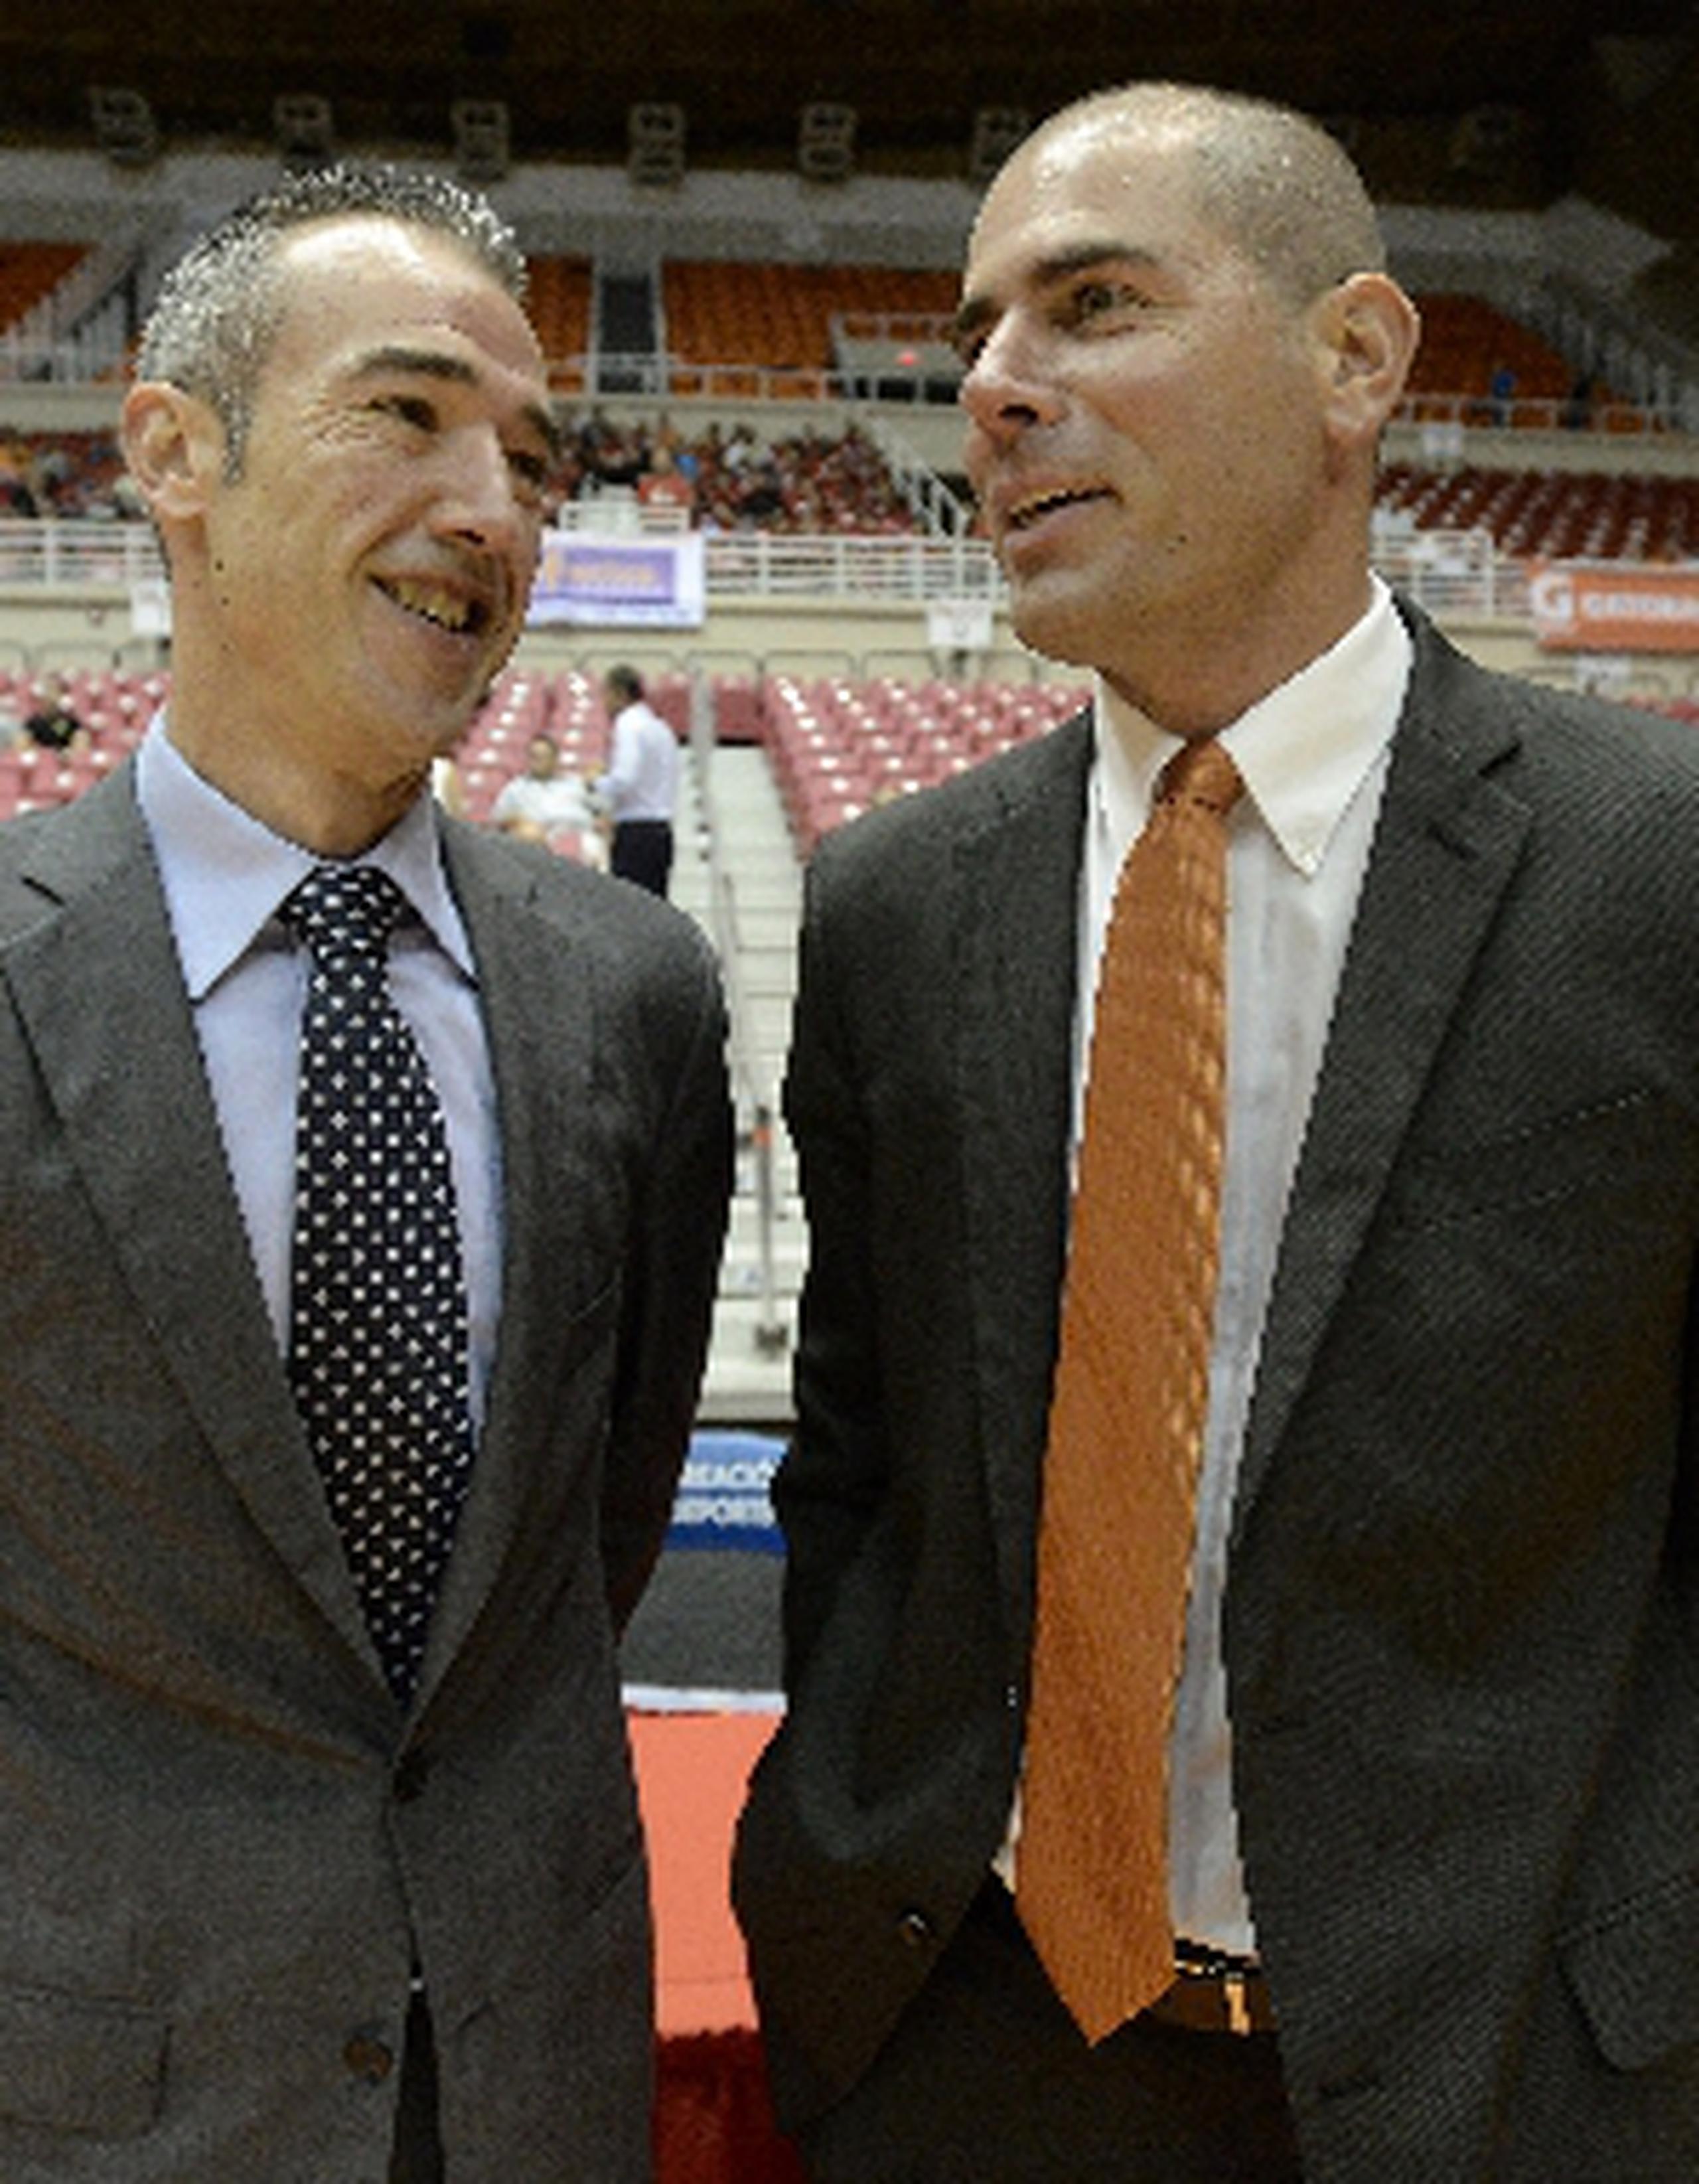 Francisco “Paco” Olmos e Iván Deniz son los primeros dirigentes españoles en trabajar en el Baloncesto Superior Nacional. carlos.giusti@gfrmedia.com